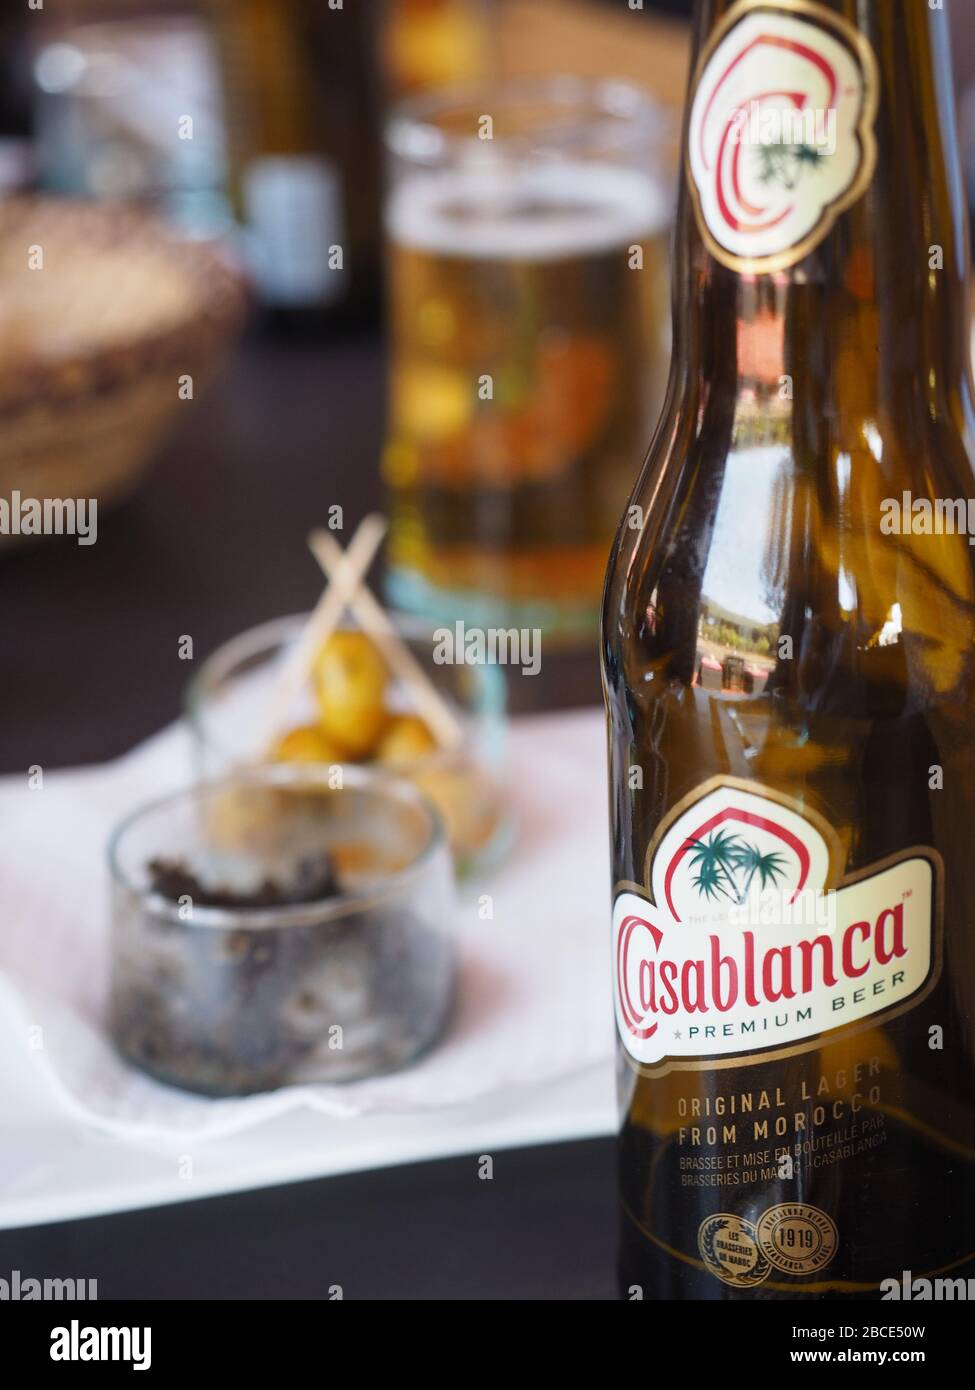 Morocco casablanca casablanca beer immagini e fotografie stock ad alta  risoluzione - Alamy